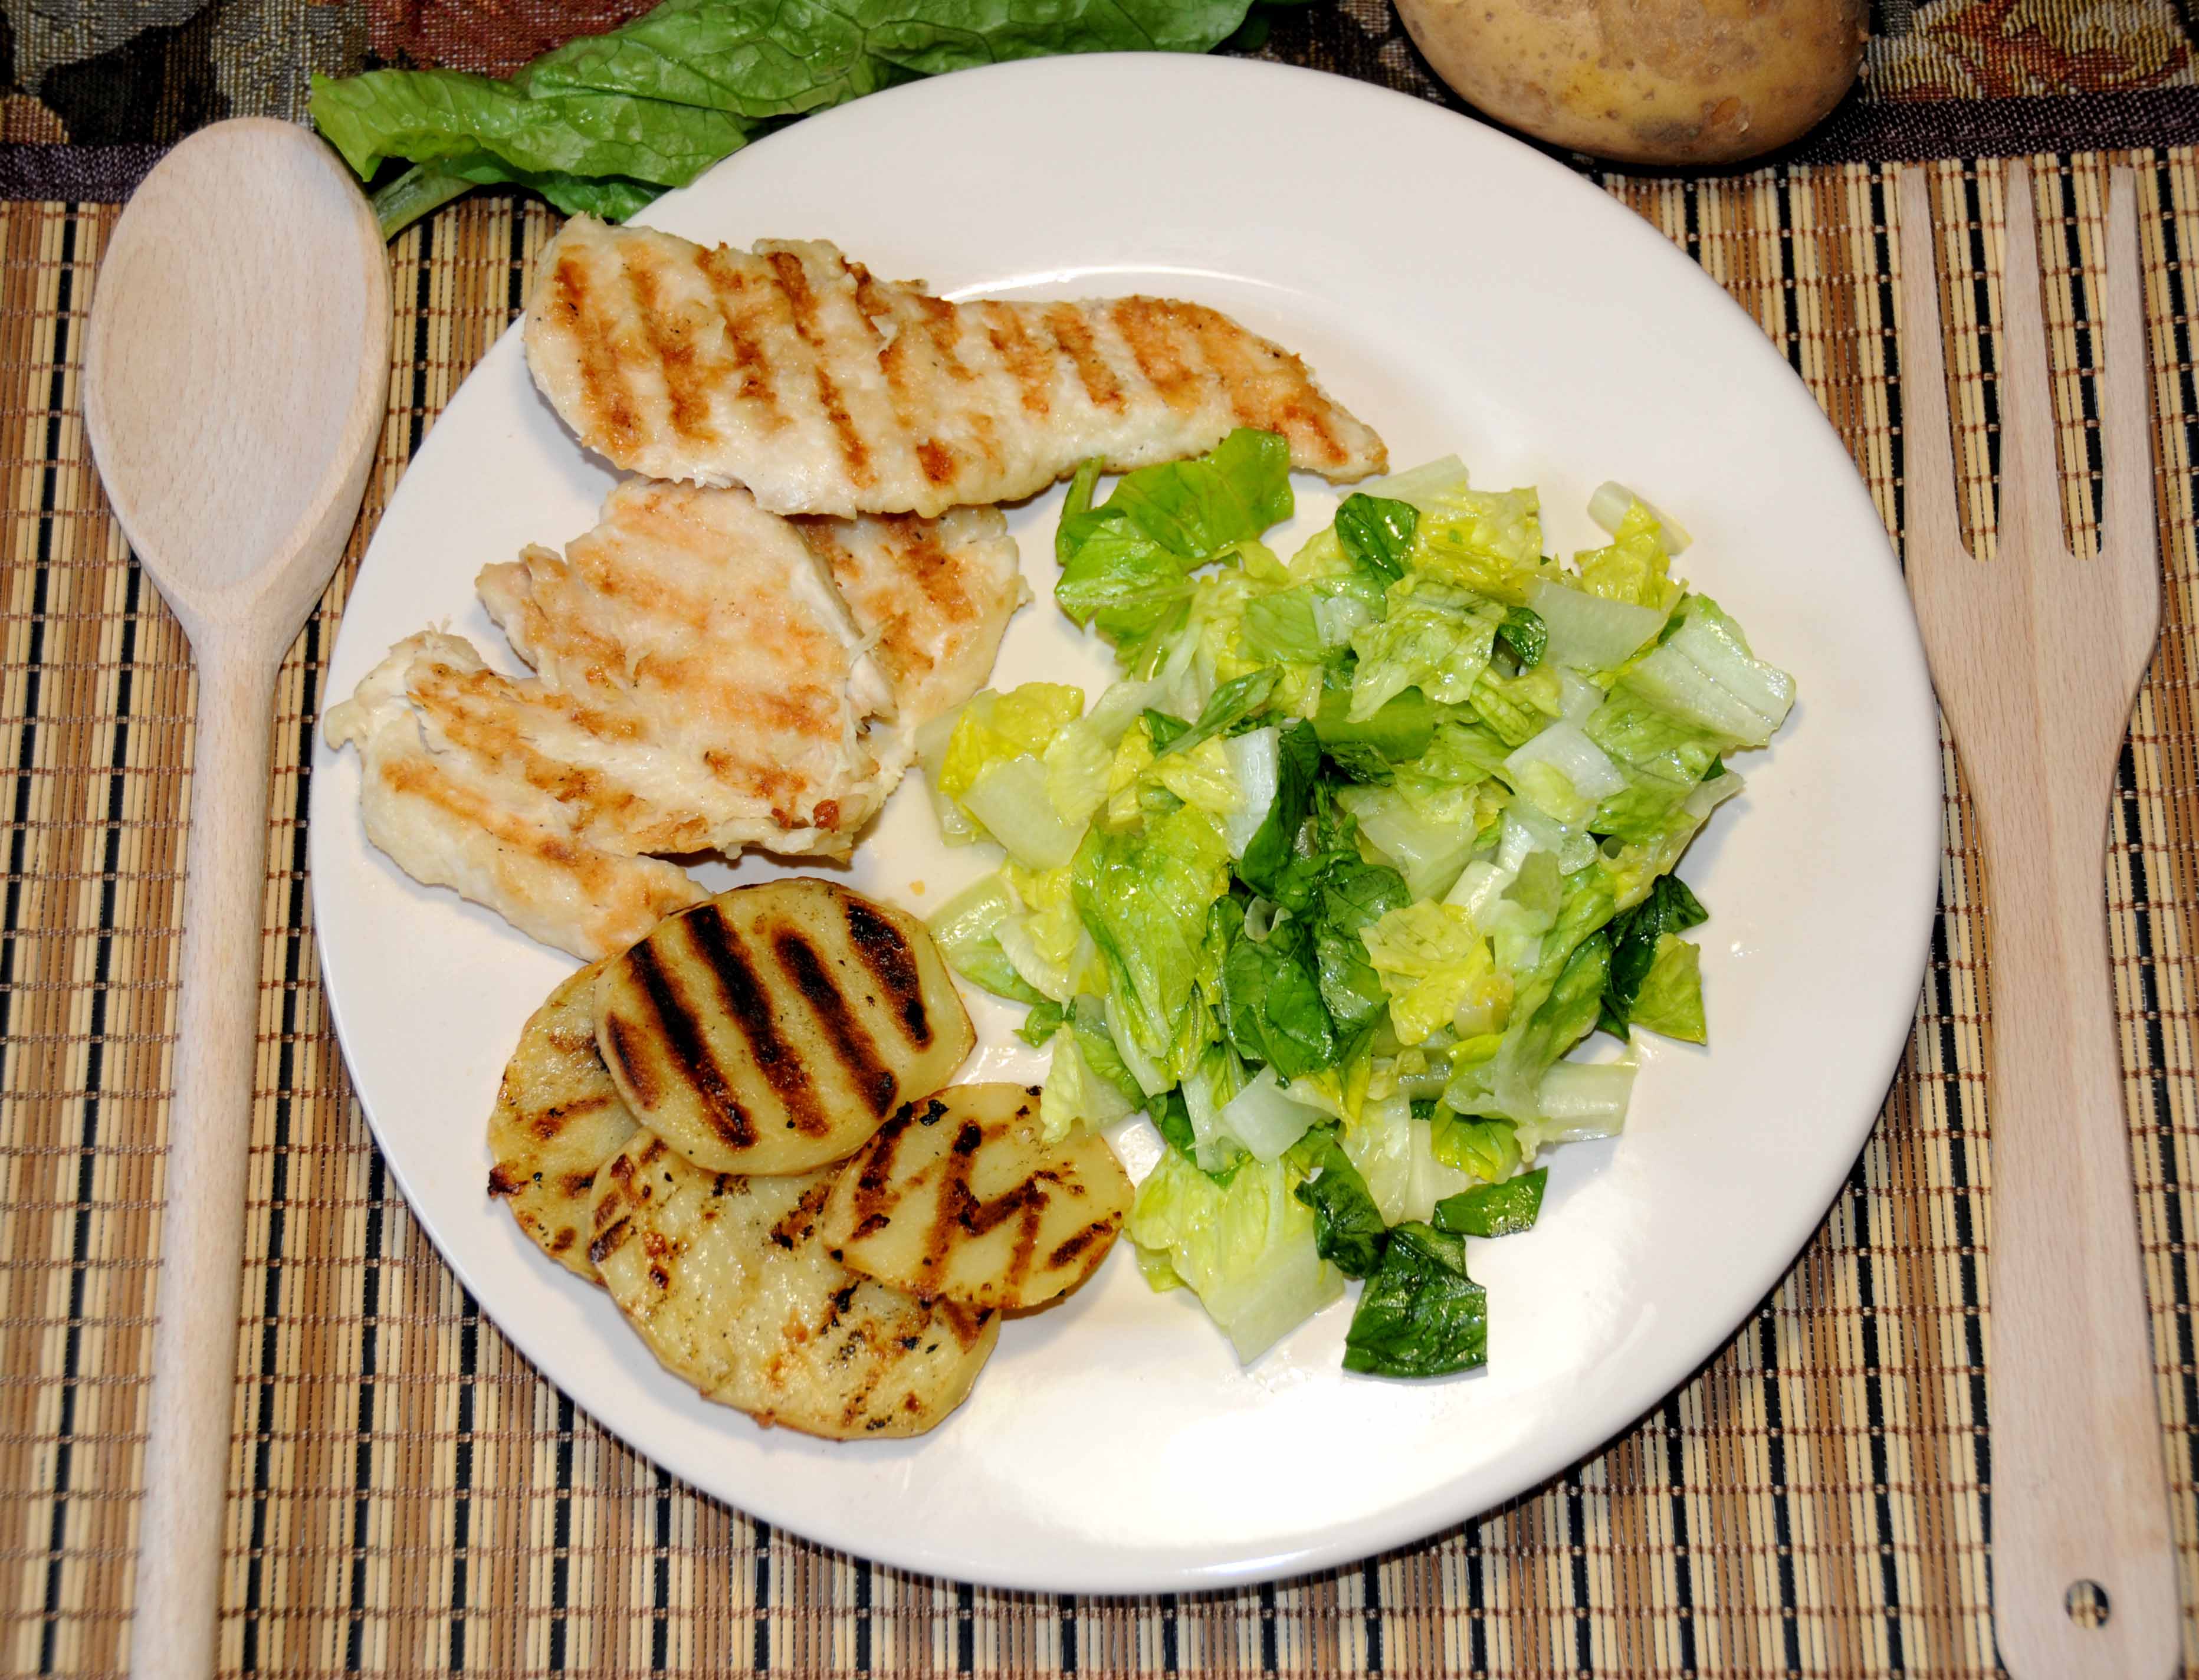 Κοτόπουλο με πατάτες στο σχαροτηγανο με σαλάτα - Chicken with potatoes in a frying pan with salad